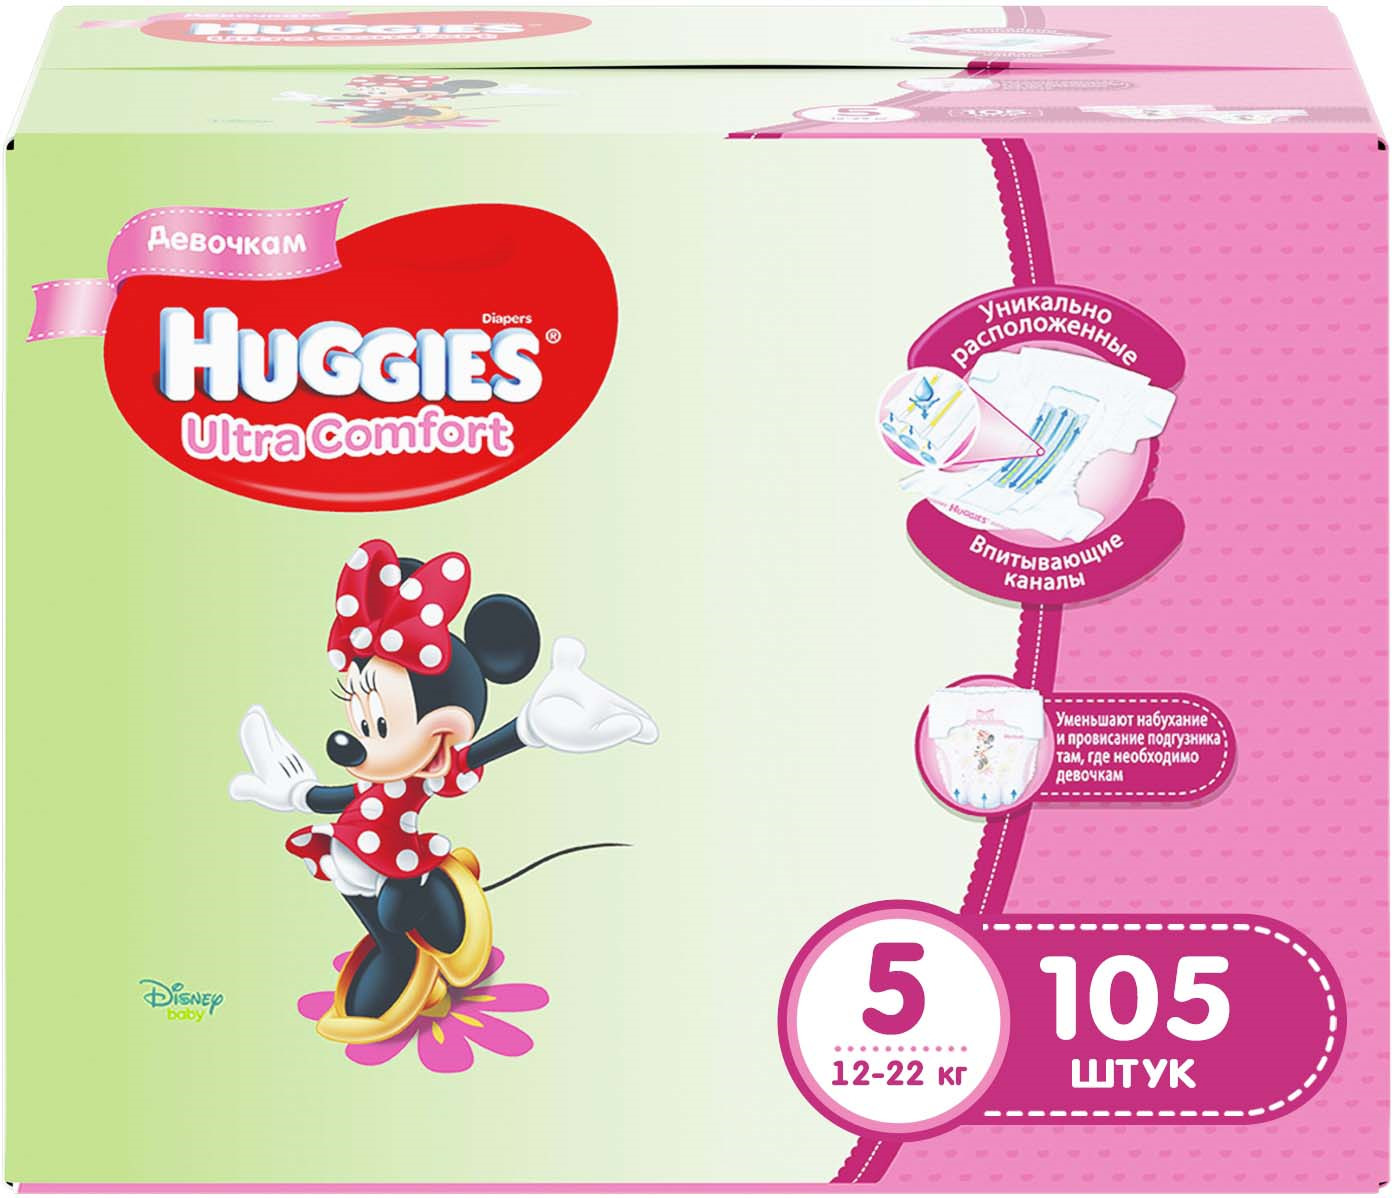 фото Huggies Подгузники для девочек Ultra Comfort 12-22 кг (размер 5) 105 шт